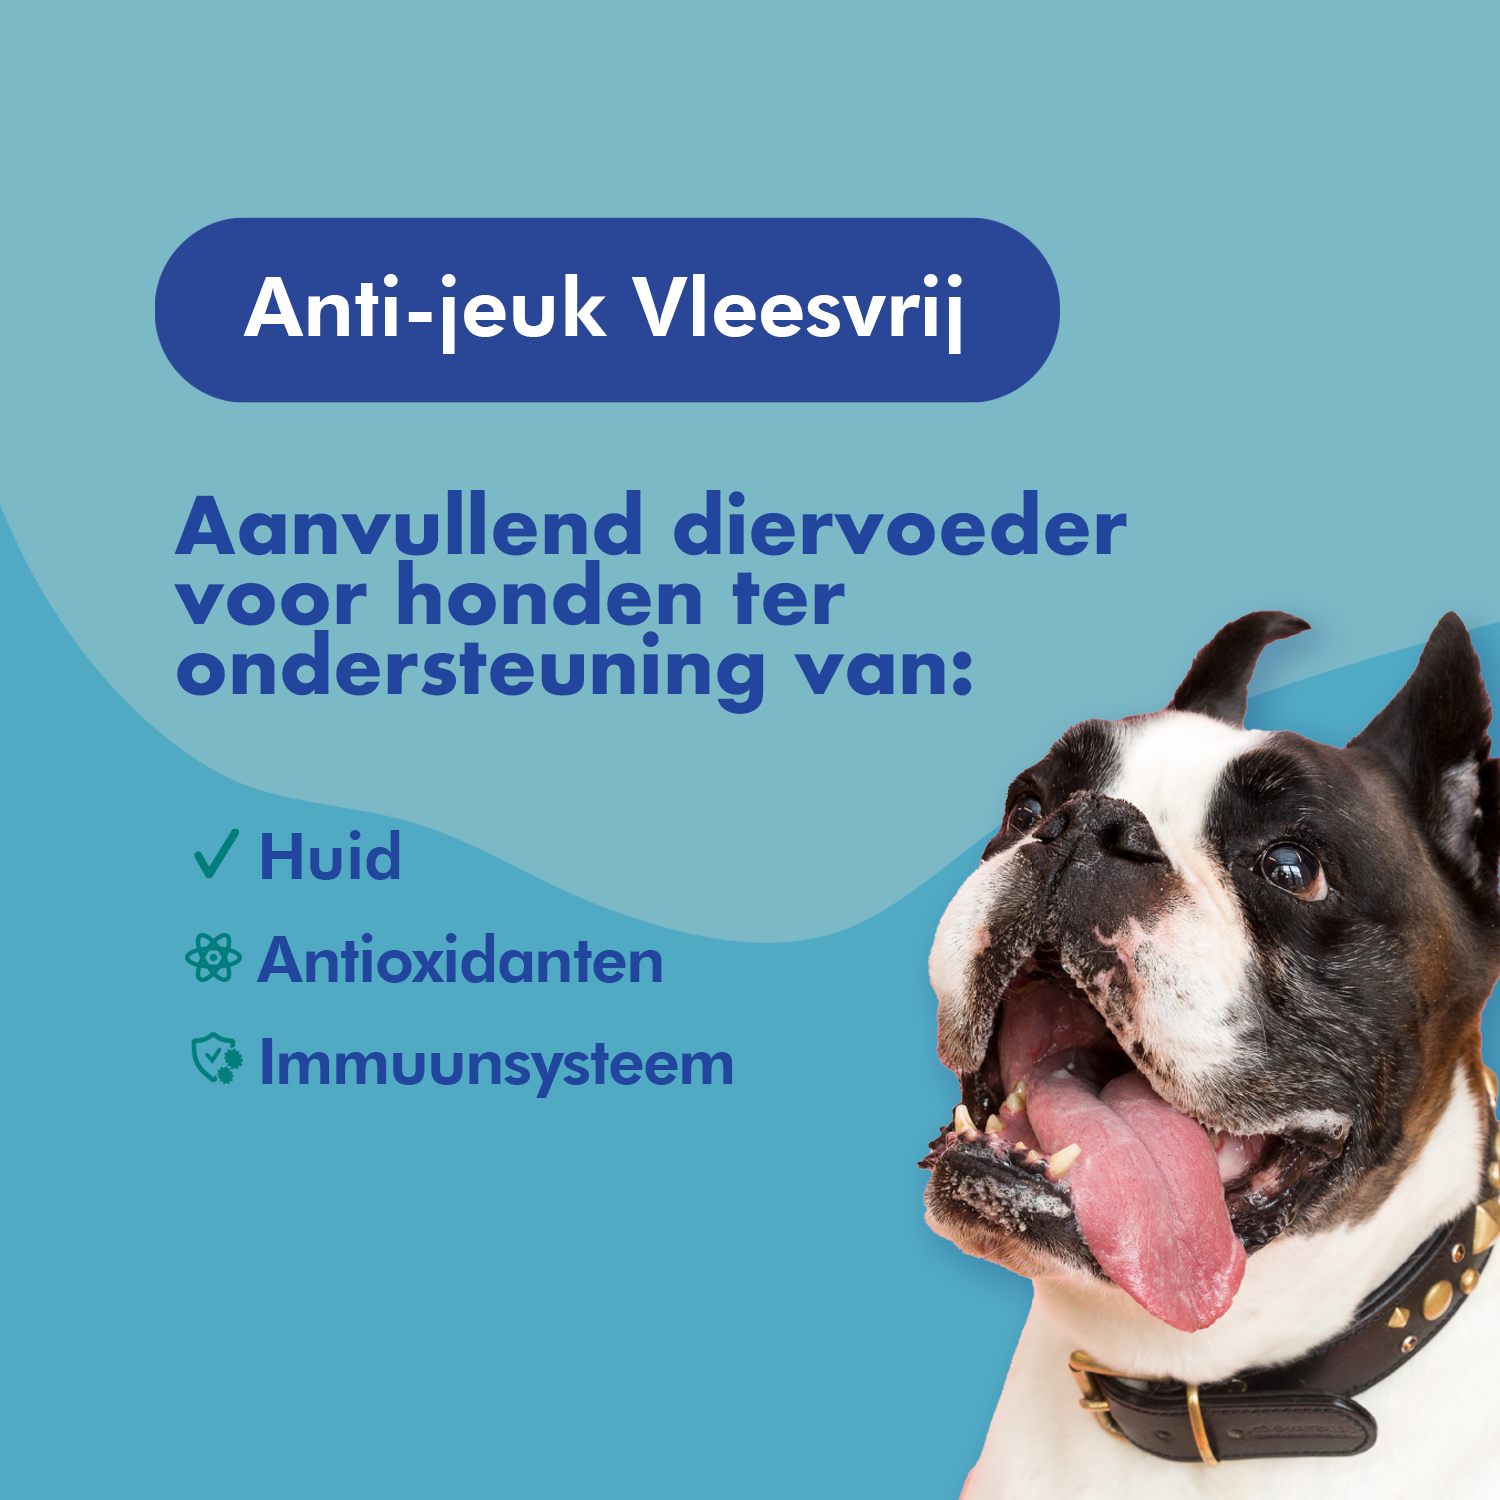 FestyBites Anti-jeuk Vleesvrij: aanvullend diervoer voor honden, verbetert huid, weerstand en immuunsysteem.